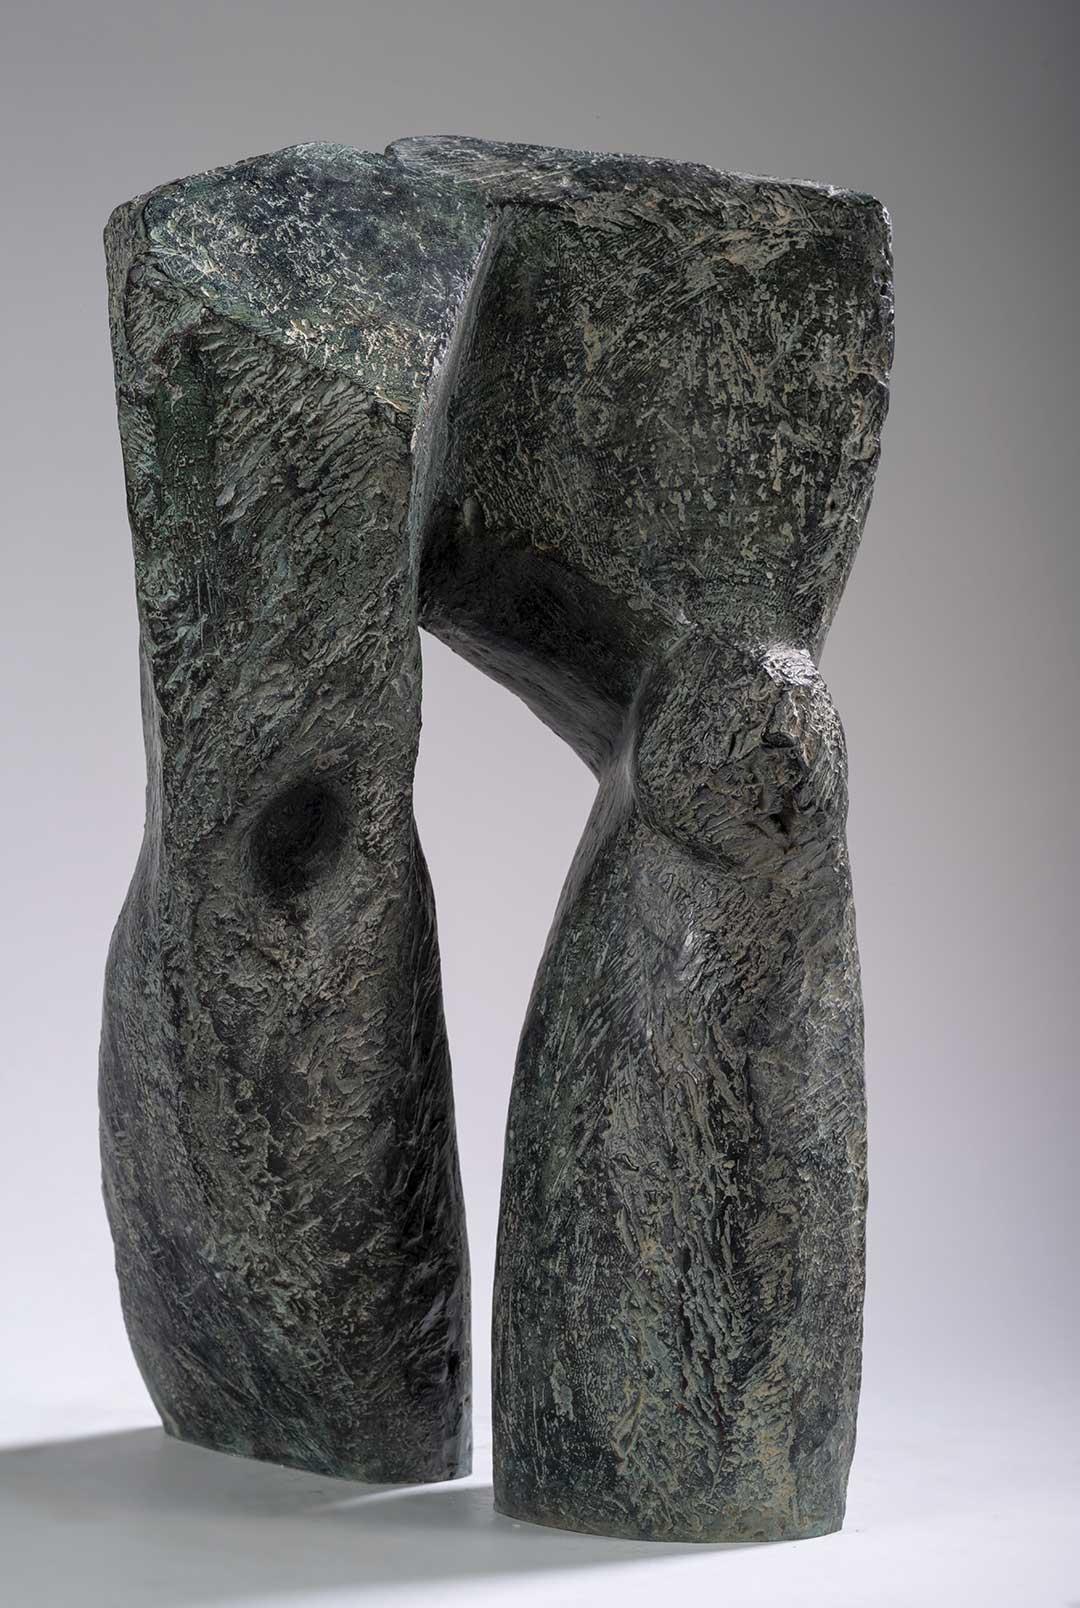 Le Passage est une sculpture en bronze de l'artiste contemporaine française Martine Demal, dont les dimensions sont 43 × 27 × 24 cm (16,9 × 10,6 × 9,4 in). 
La sculpture est signée et numérotée, elle fait partie d'une édition limitée à 8 exemplaires